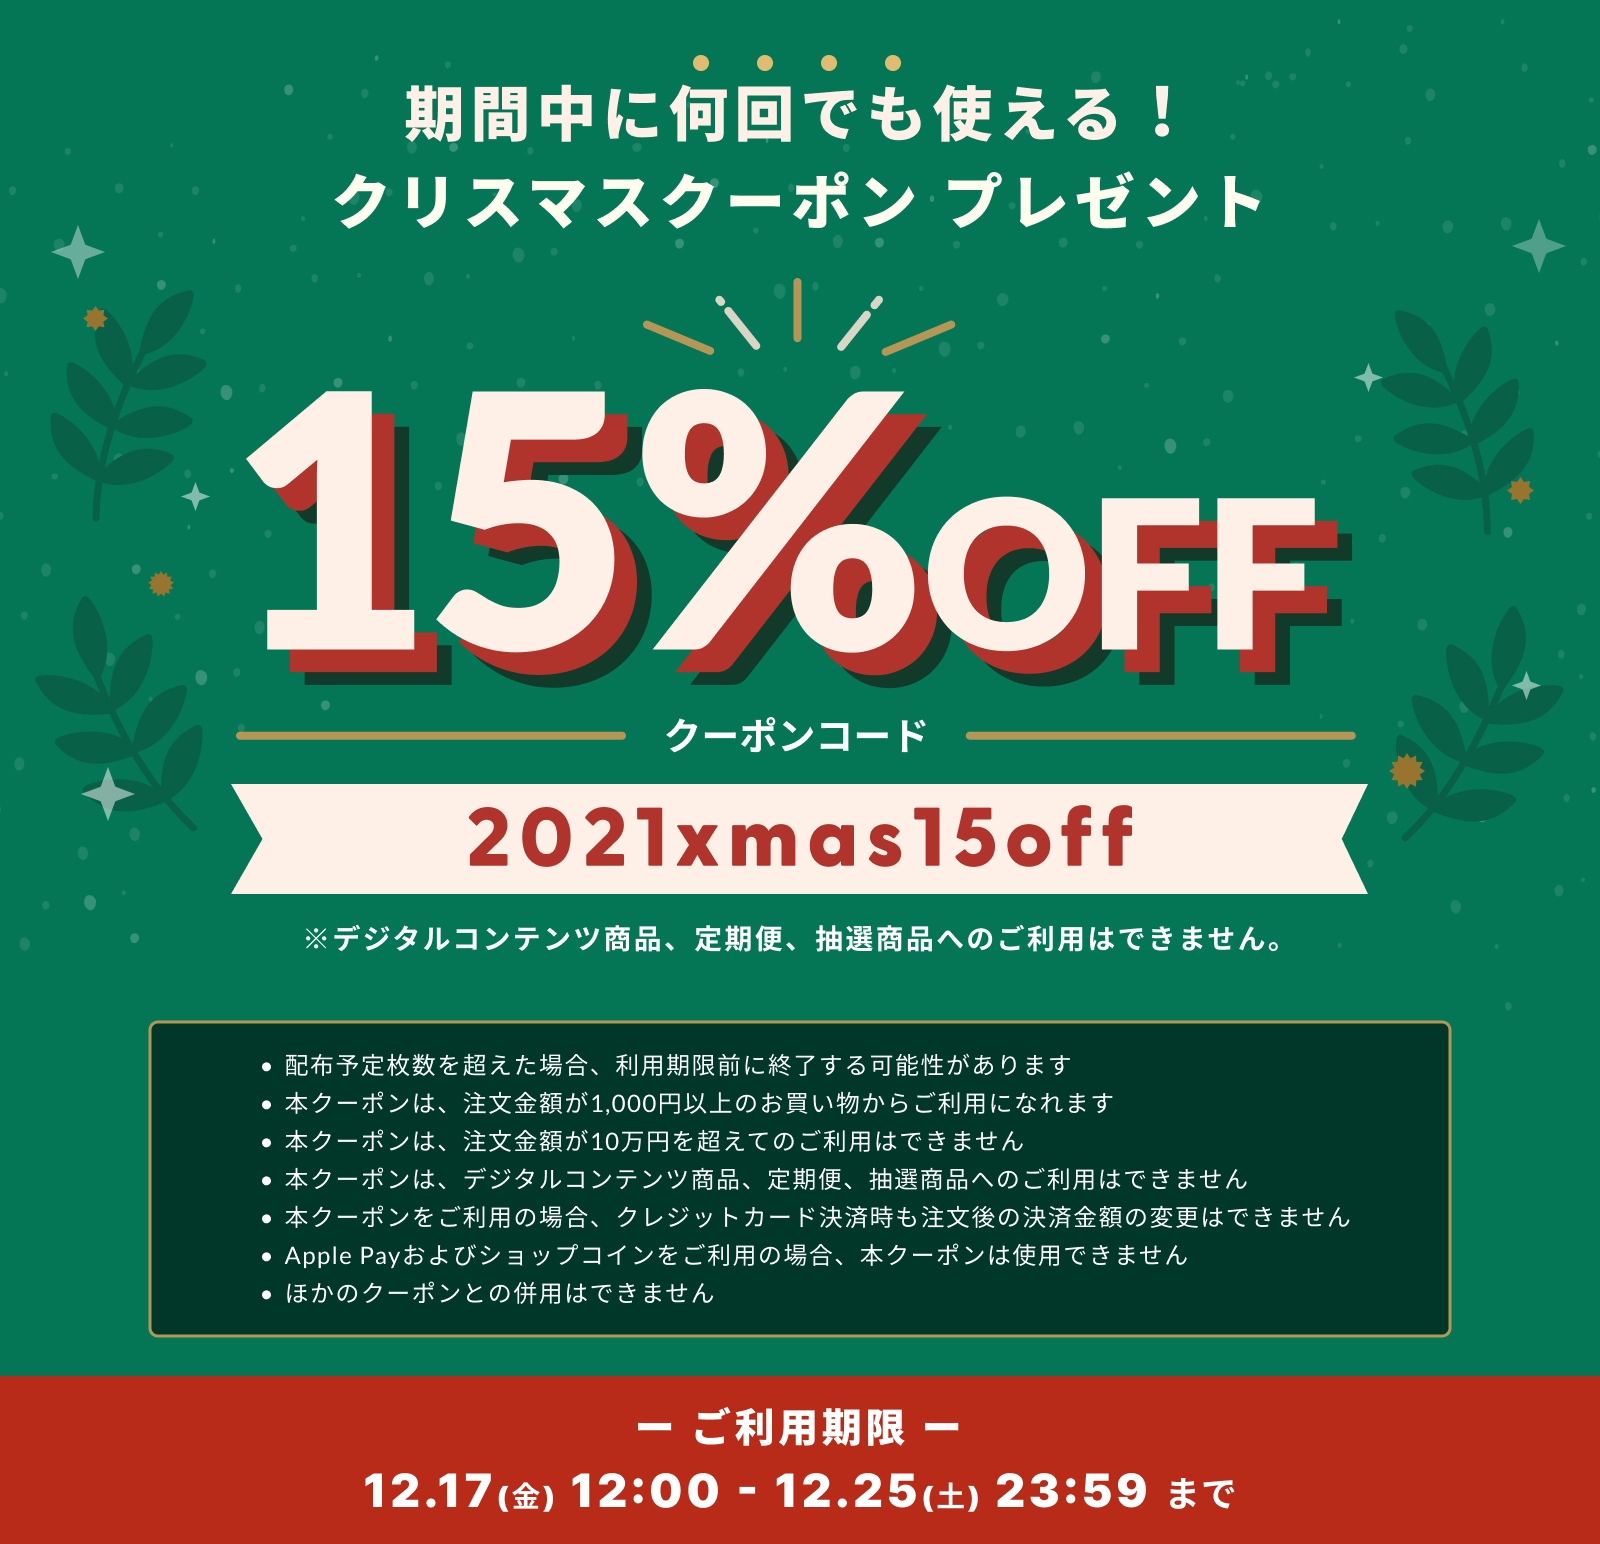 *.+.冬の贈り物に!クリスマス15%OFFクーポン!! *.+.